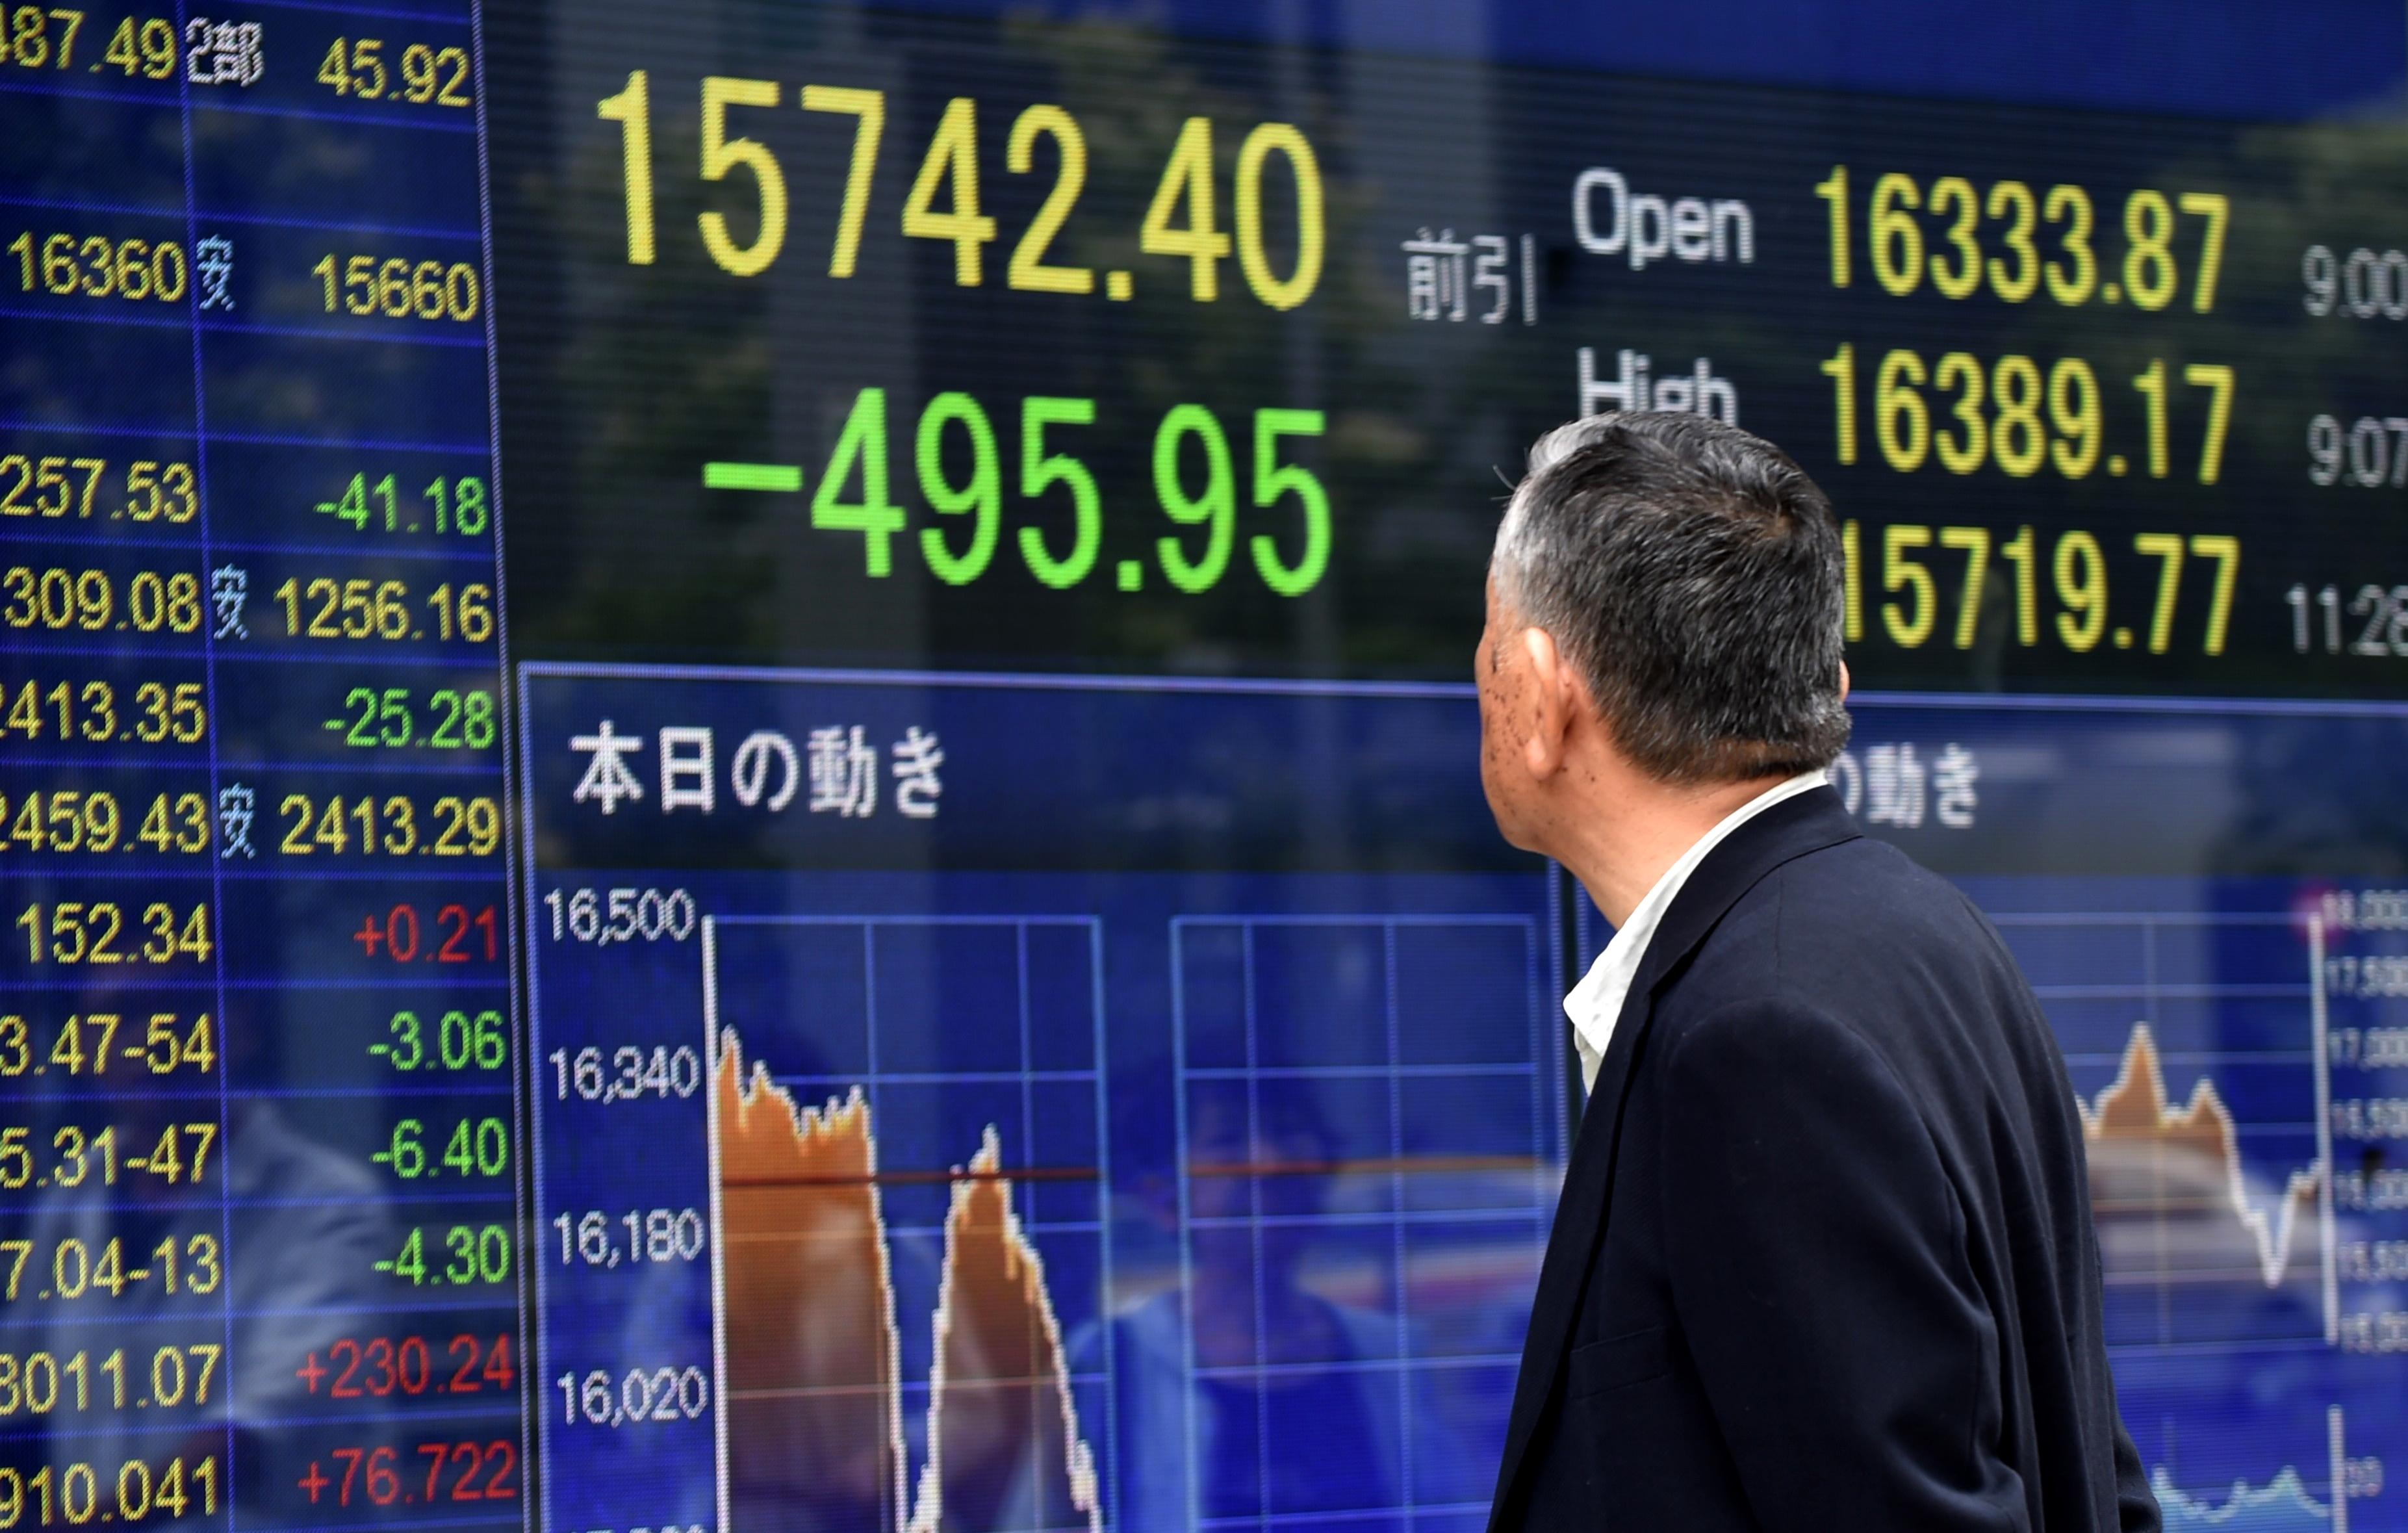 Bourse de Tokyo: le Nikkei chute de plus de 3% à la mi-journée, craintes de Brexit